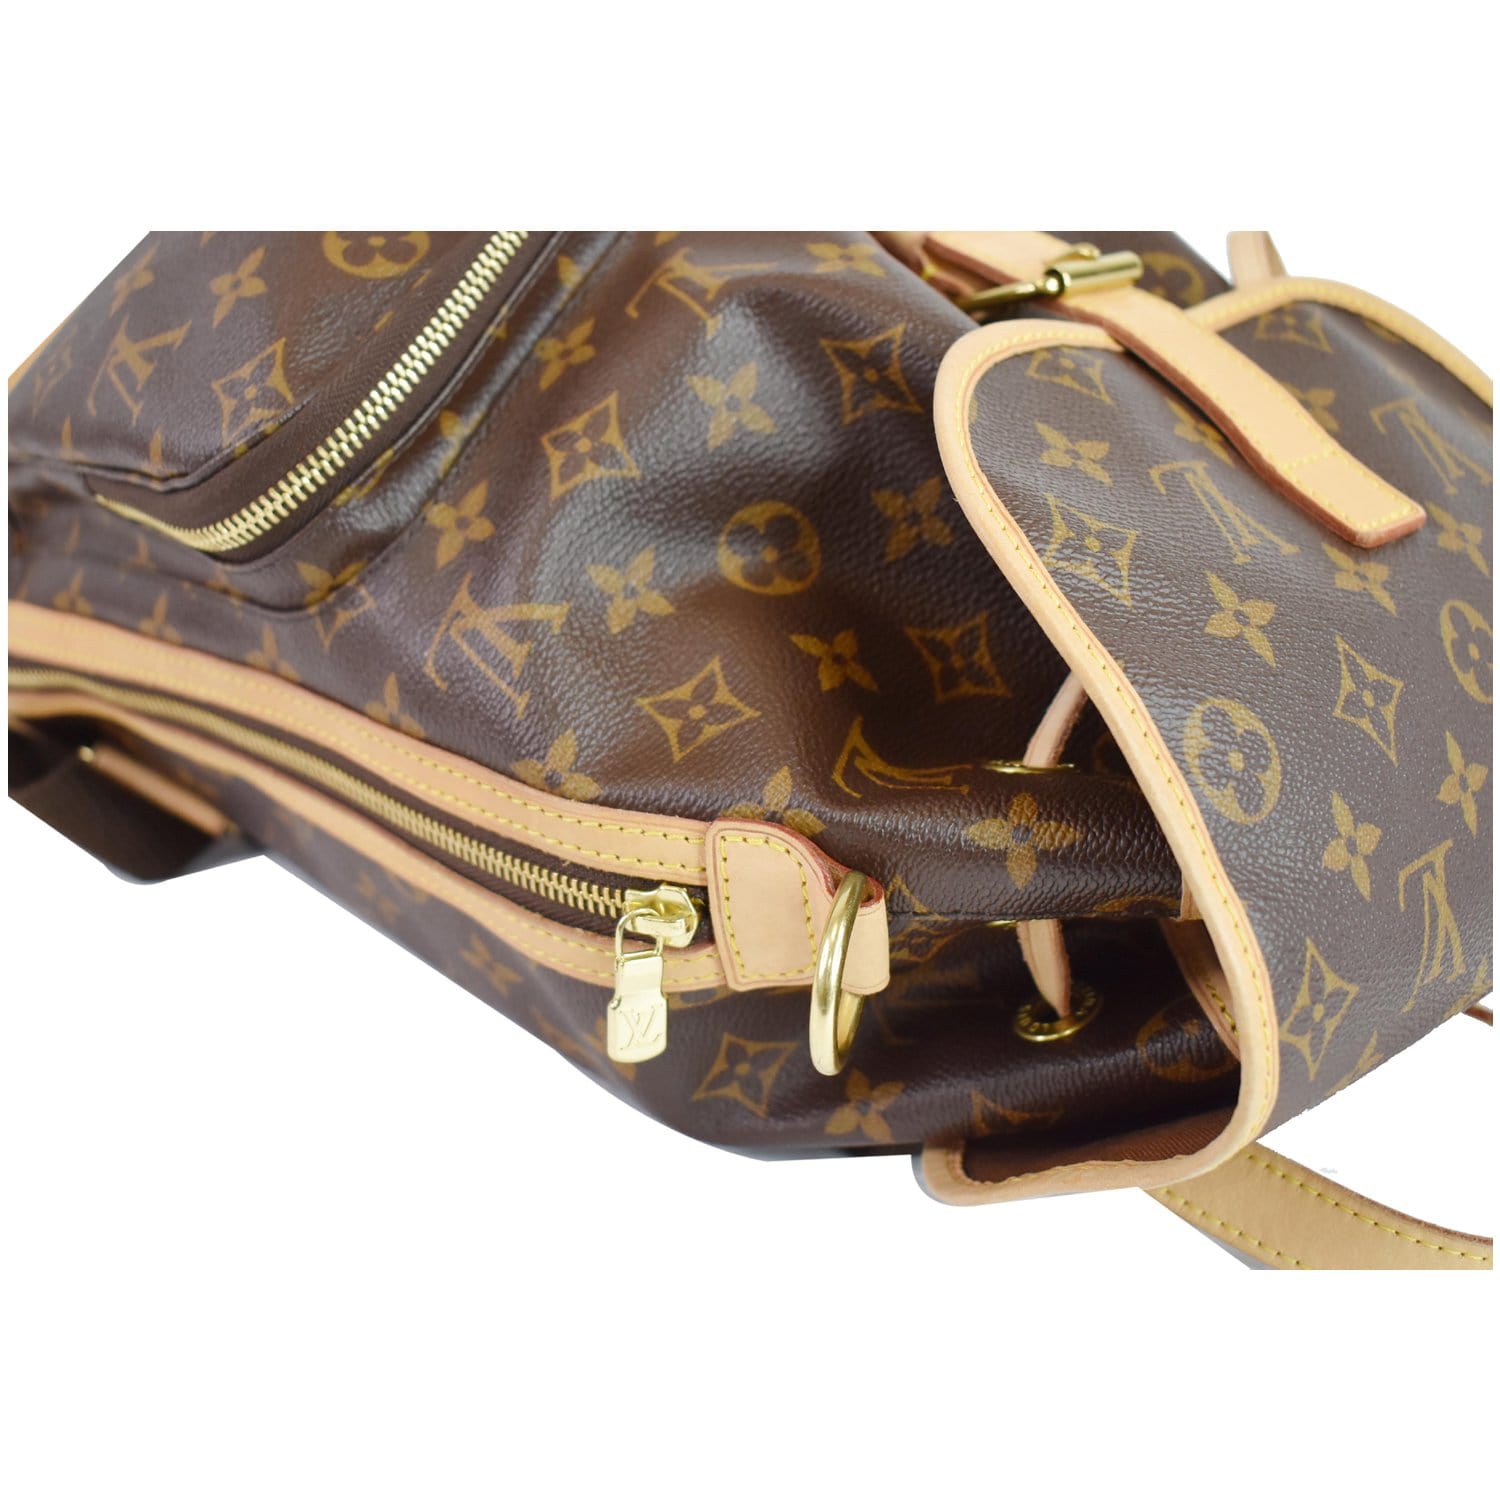 Bosphore backpack backpack Louis Vuitton Brown - 19334316